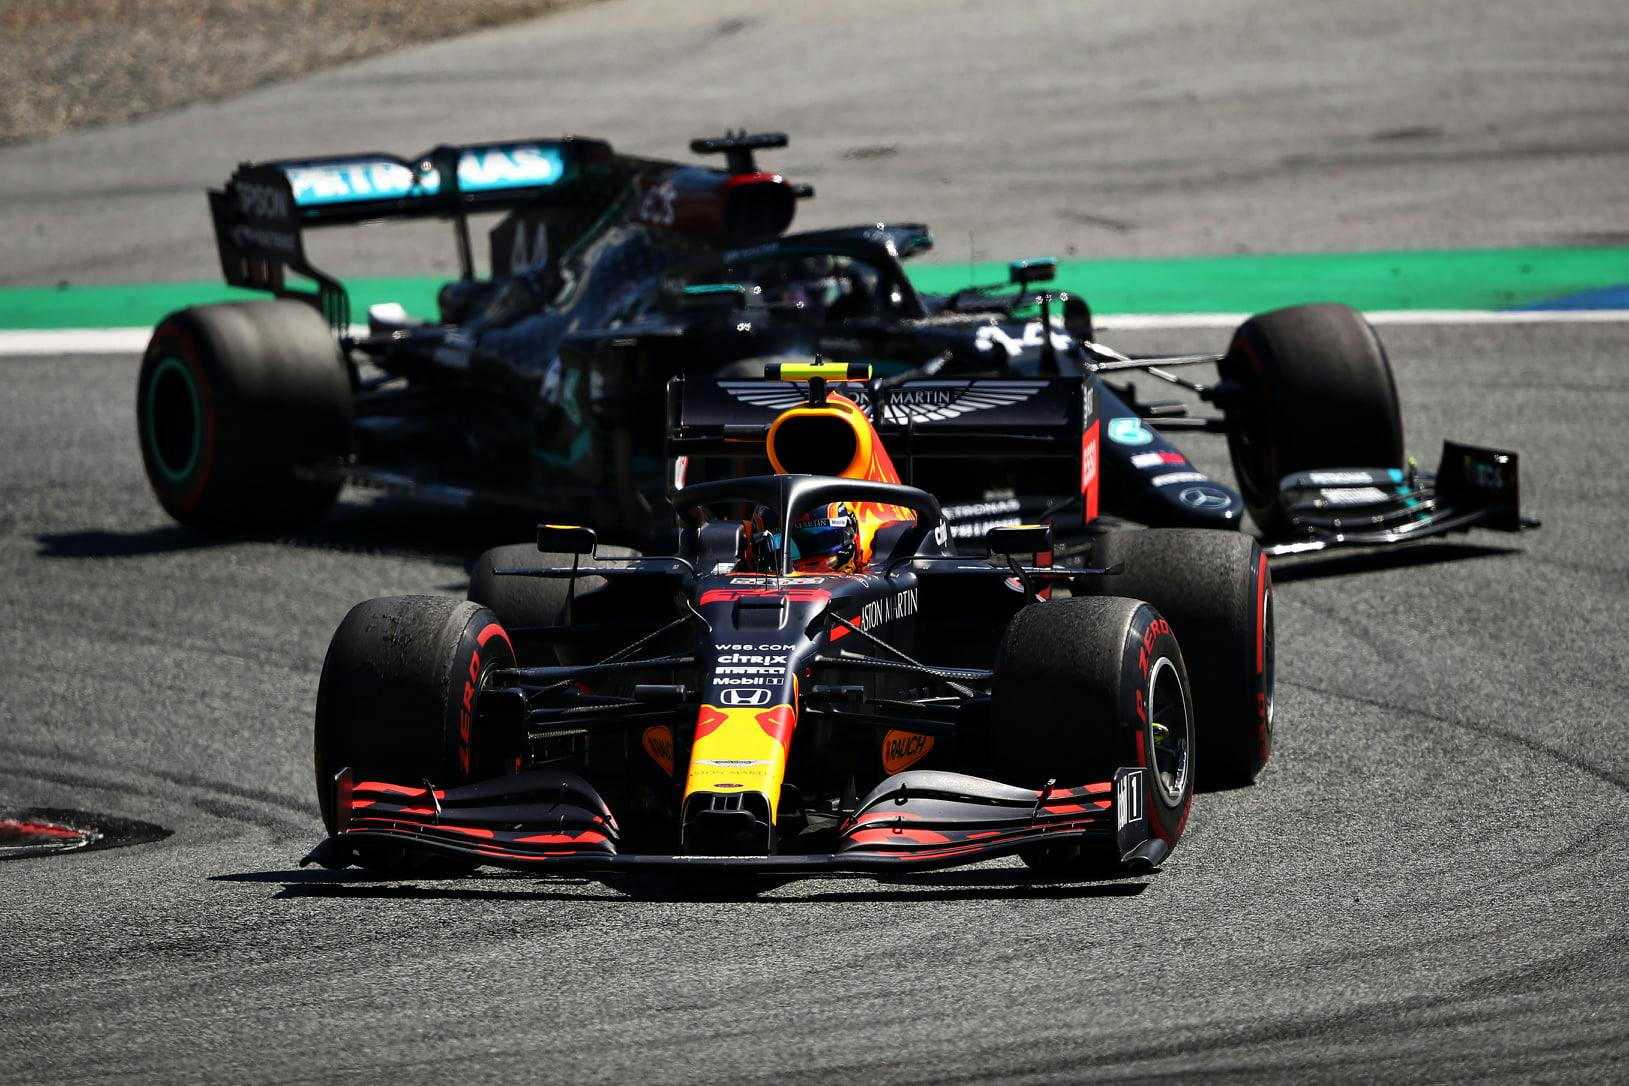 3x3: Kontrowersyjna kara, silniki Ferrari, trudne położenie Red Bulla